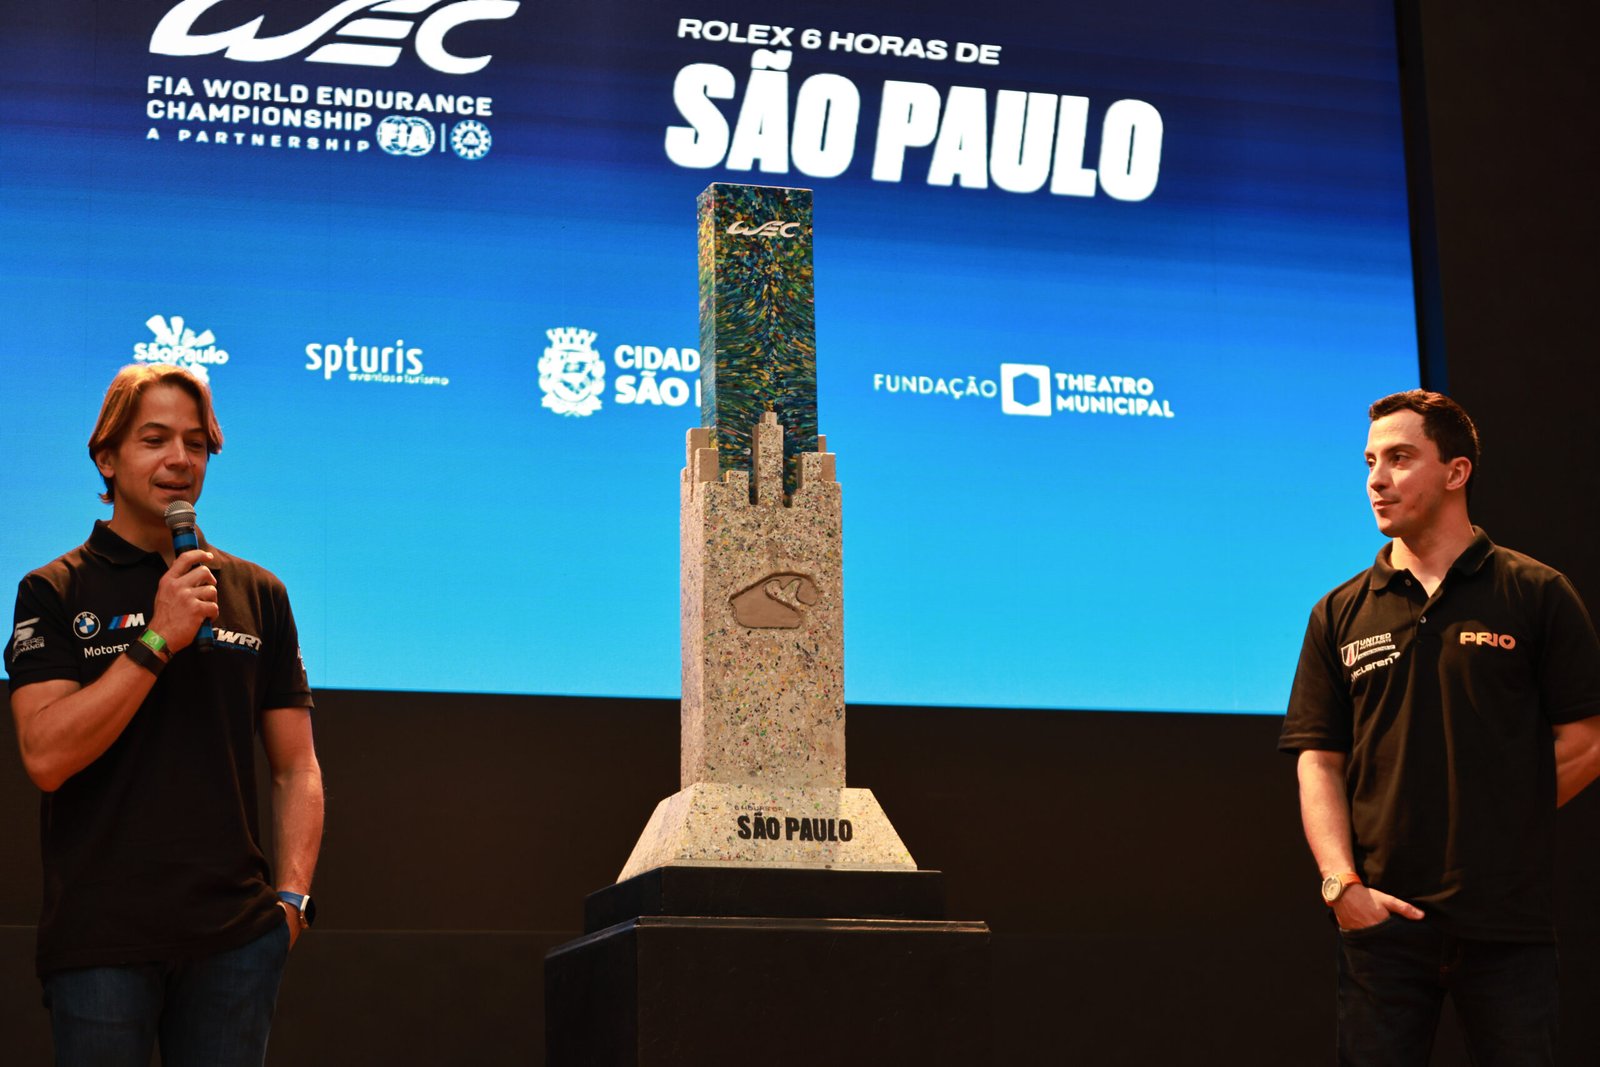 Troféu das 6 Horas de São Paulo: um símbolo de sustentabilidade urbana